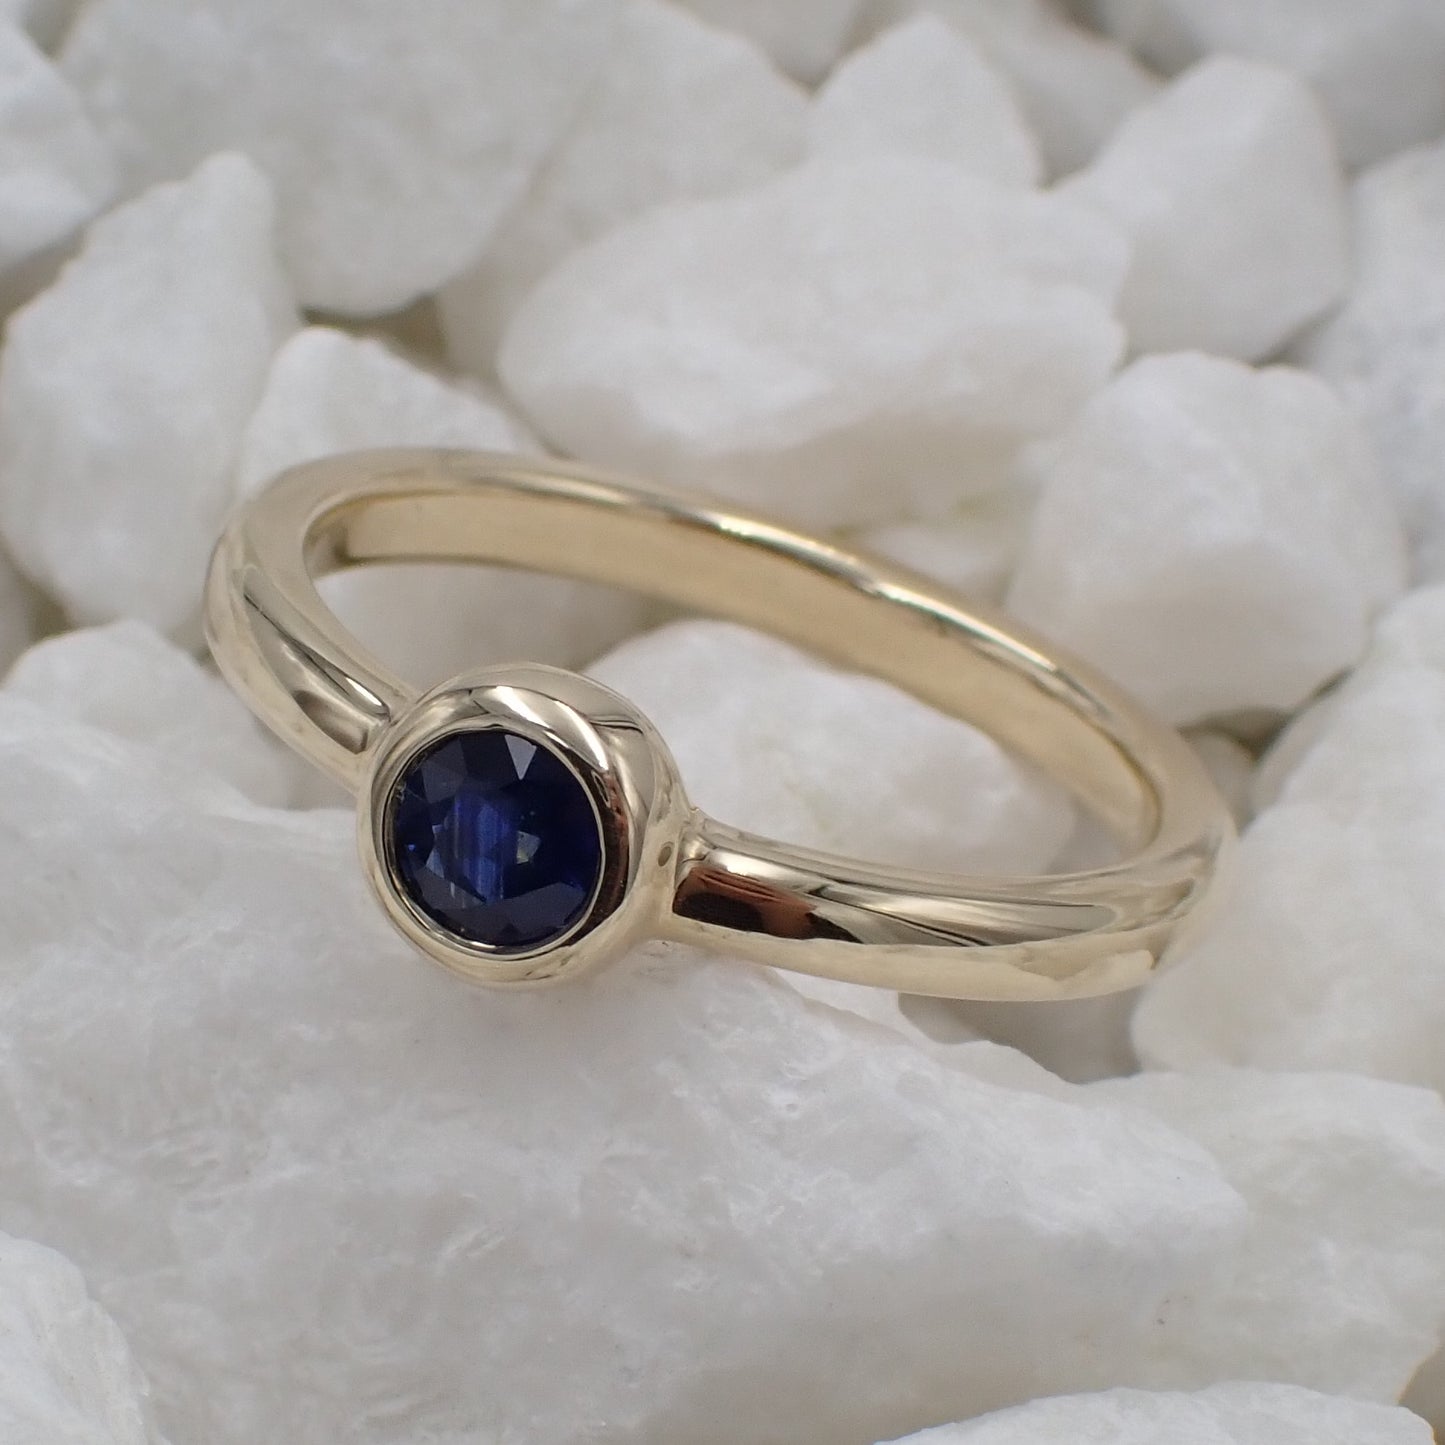 Australian Blue Sapphire Ring - 9K Gold